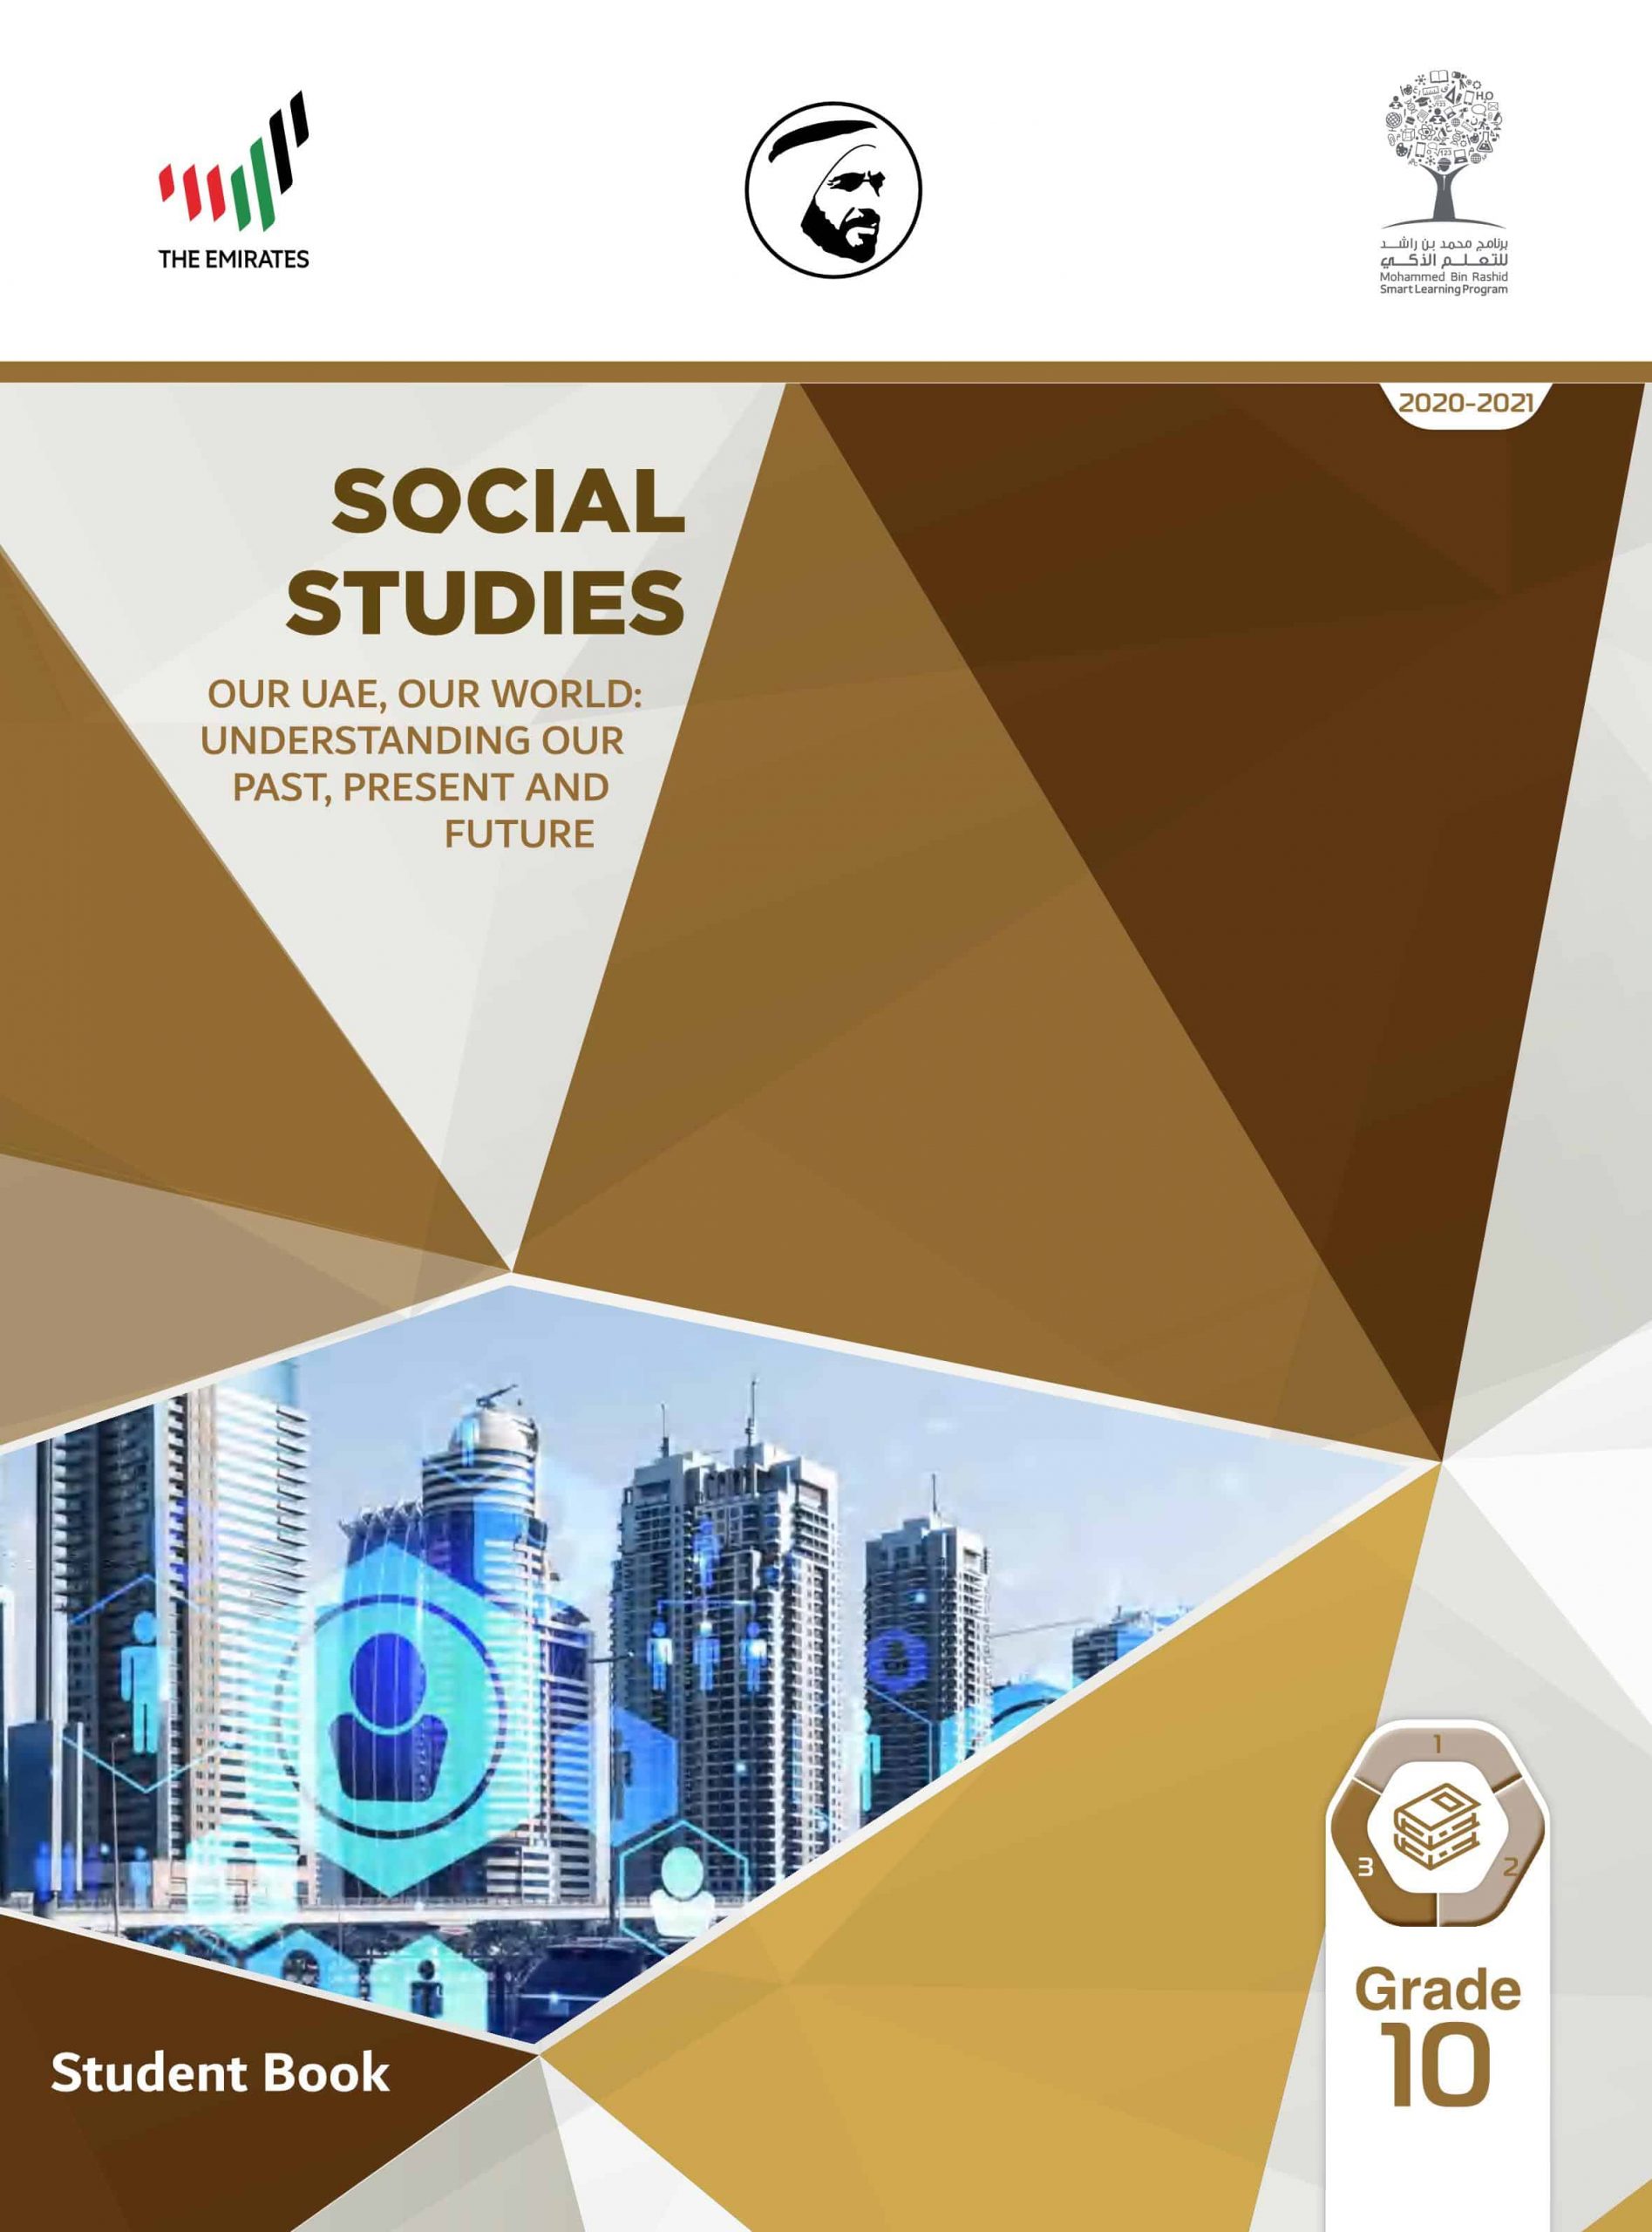 كتاب الطالب بالإنجليزي الفصل الدراسي الثالث 2020-2021 الصف العاشر مادة الدراسات الإجتماعية والتربية الوطنية